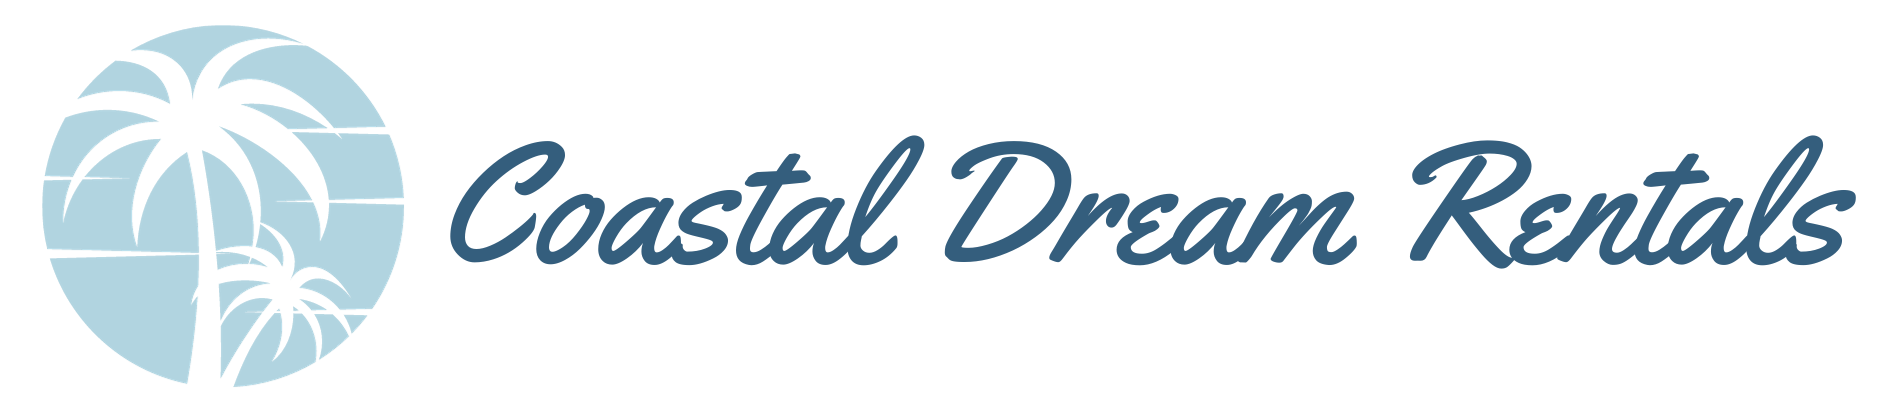 Coastal Dream Rentals logo